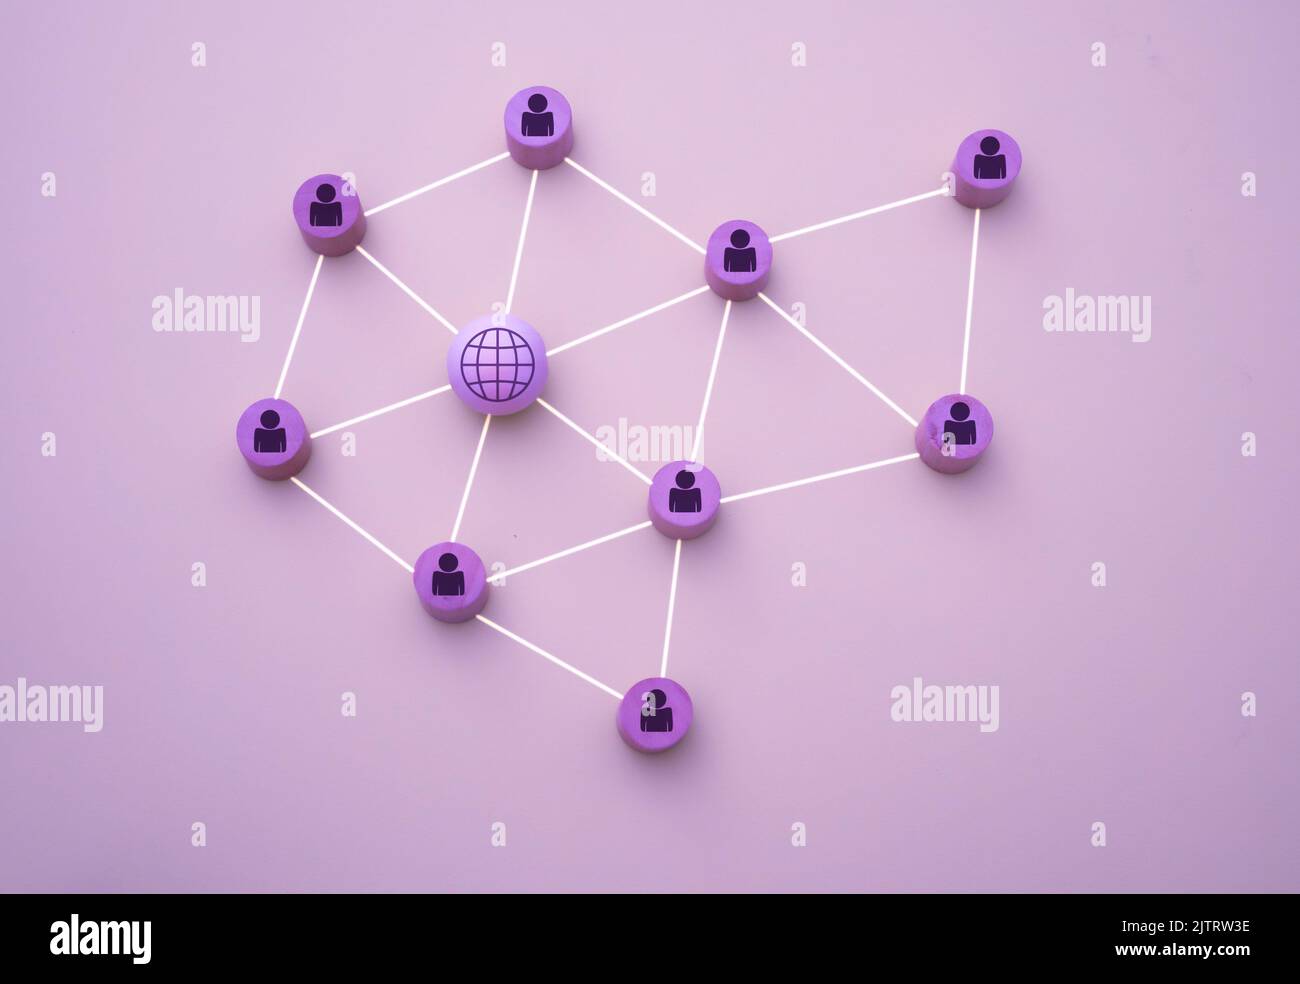 3D Darstellung von Personen, die mit dem Netzwerk in Form eines Netzes verbunden sind, dargestellt mit Holzstücken auf einem violetten Hintergrund Stockfoto